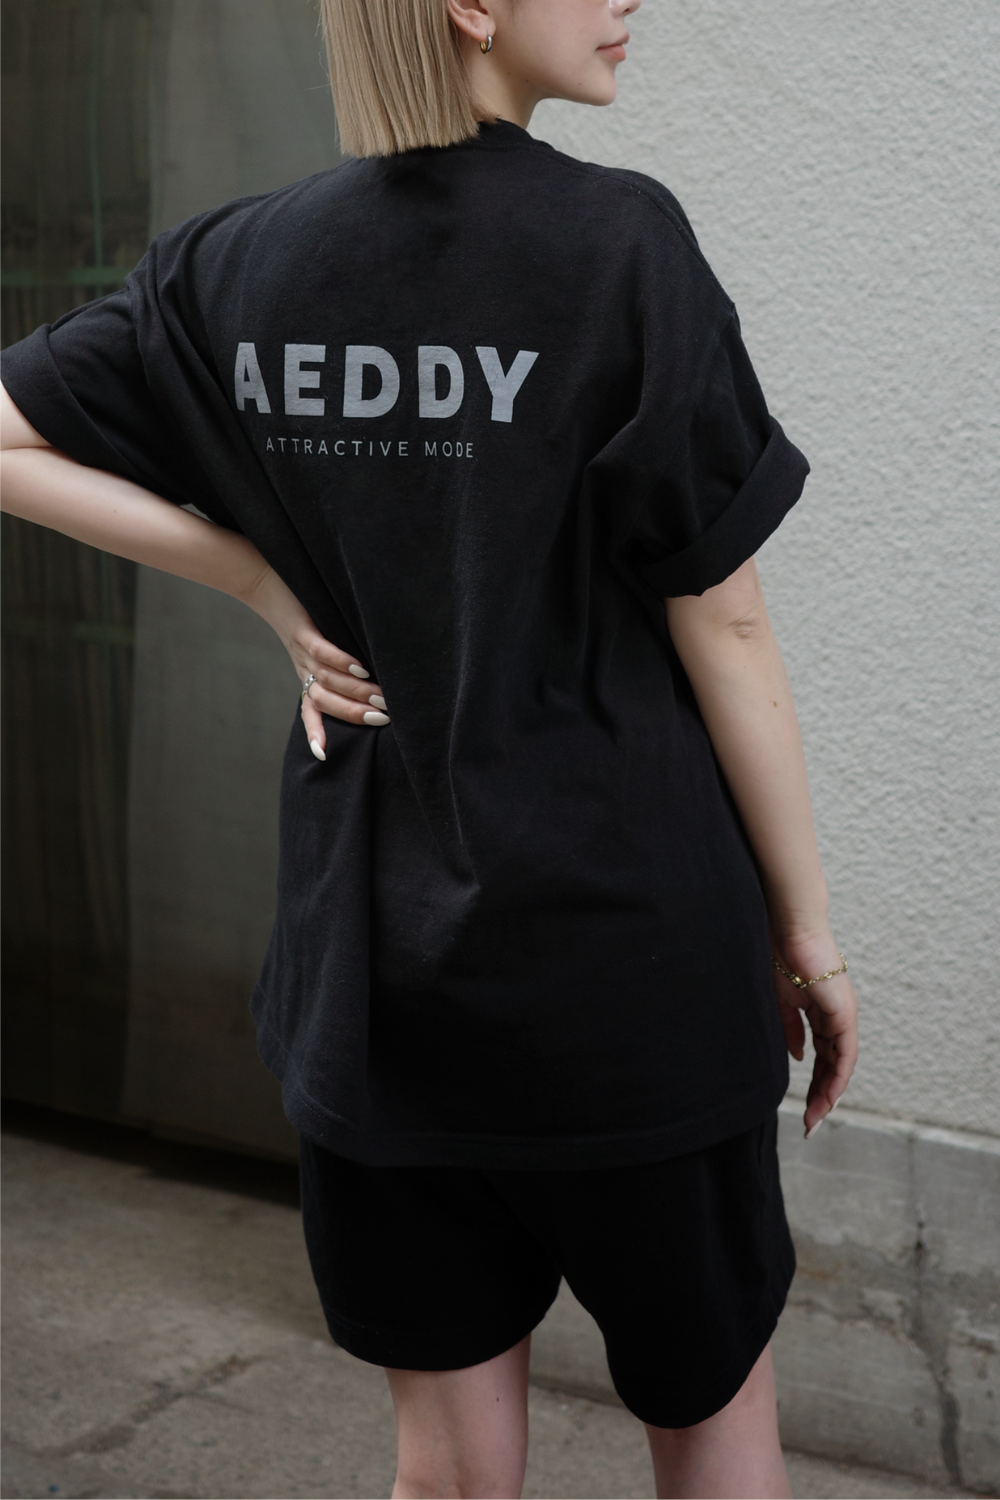 【セット販売】AEDDY logo unisex SETUP【7.11以降に発送】